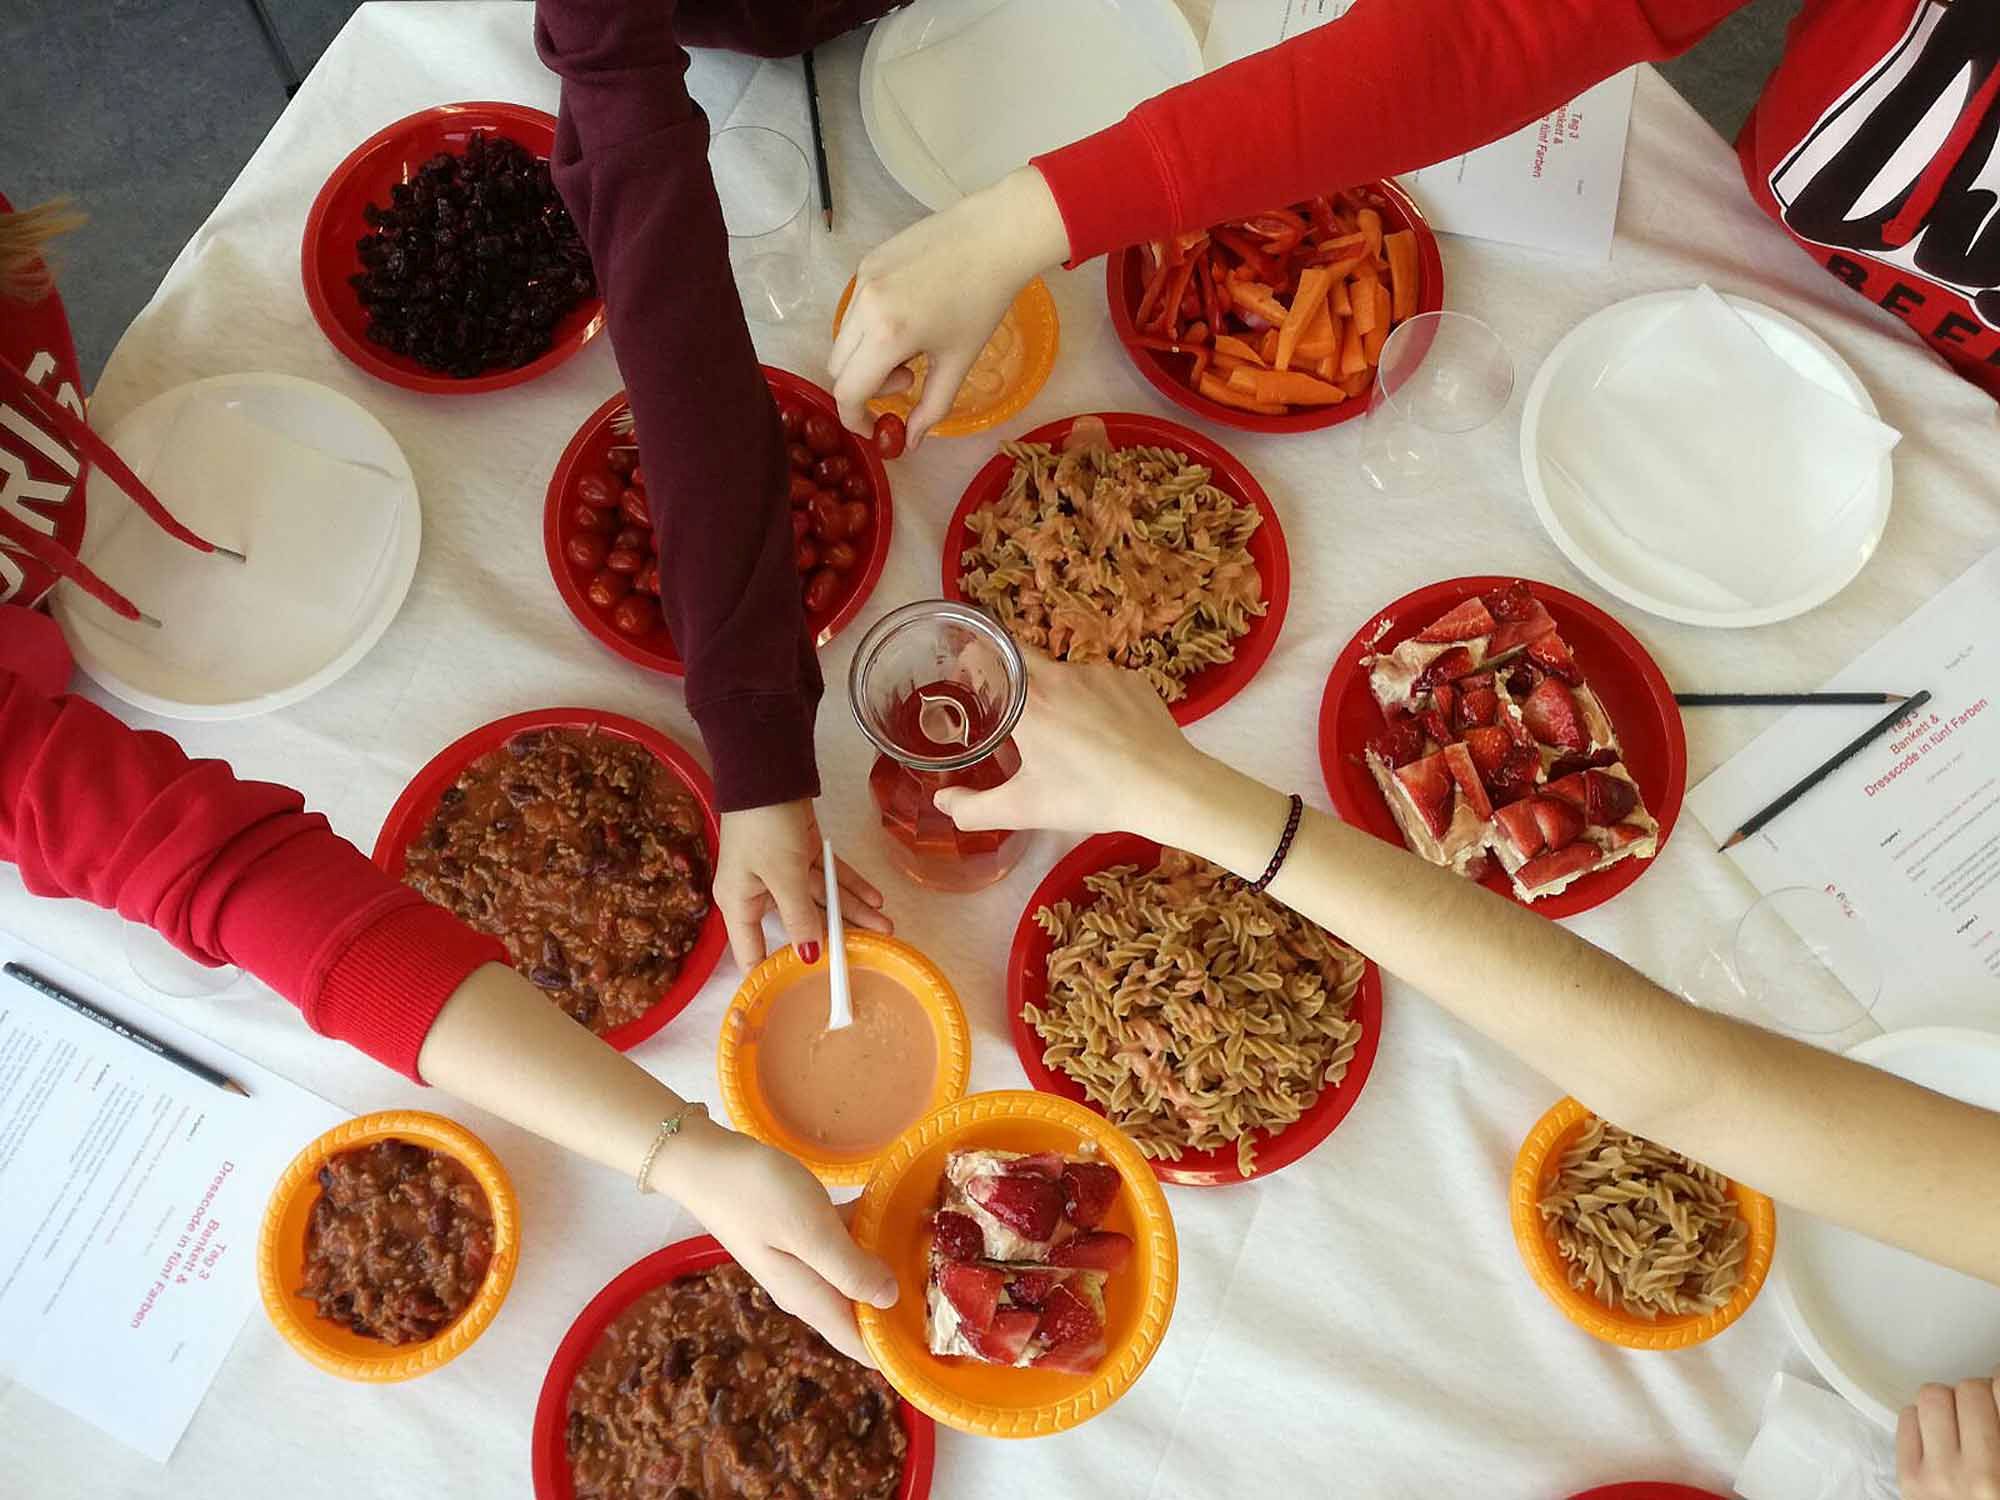 Speisen in roten und orangen Tellern aufgetischt, danach greifende Hände